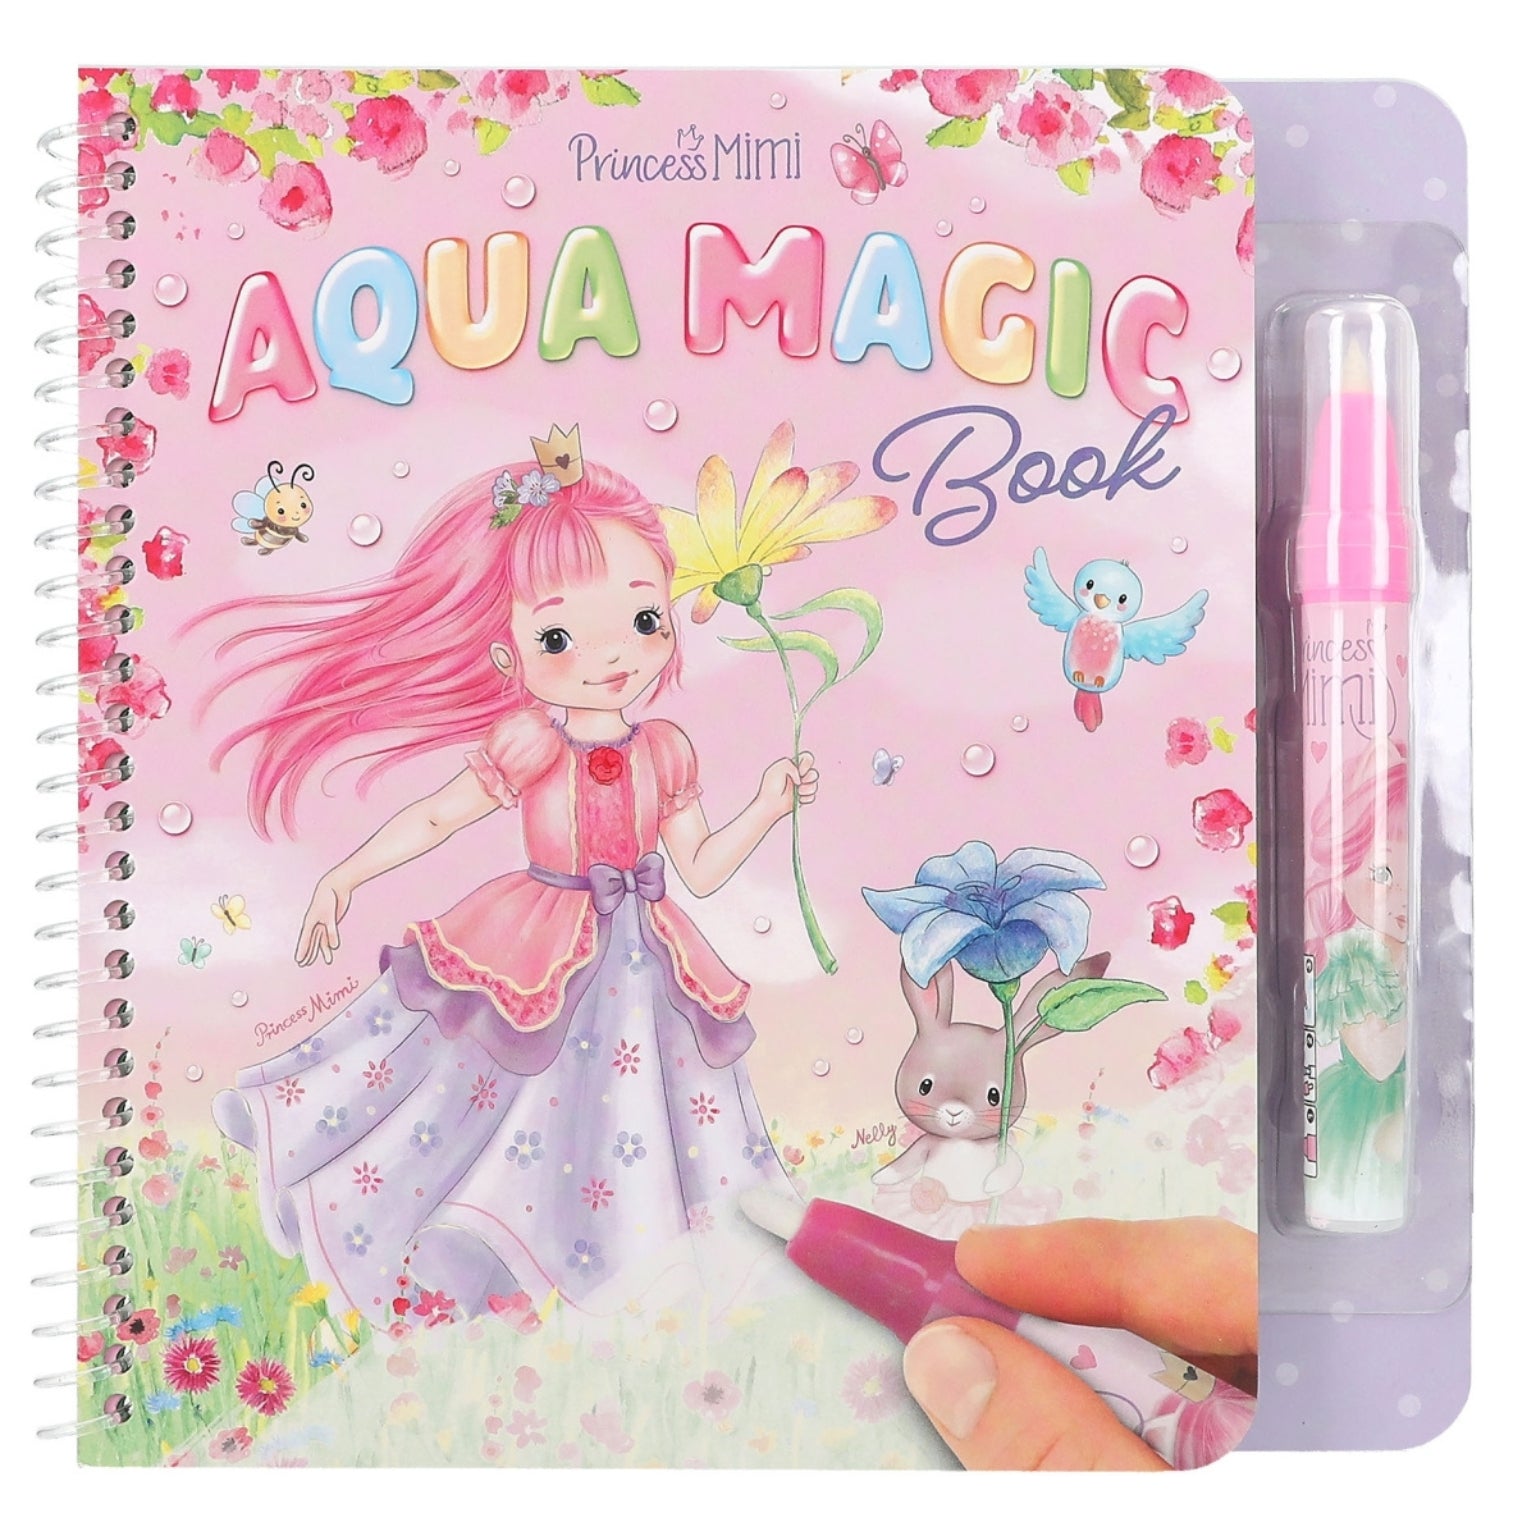 Aqua Magic Princesa Mimi